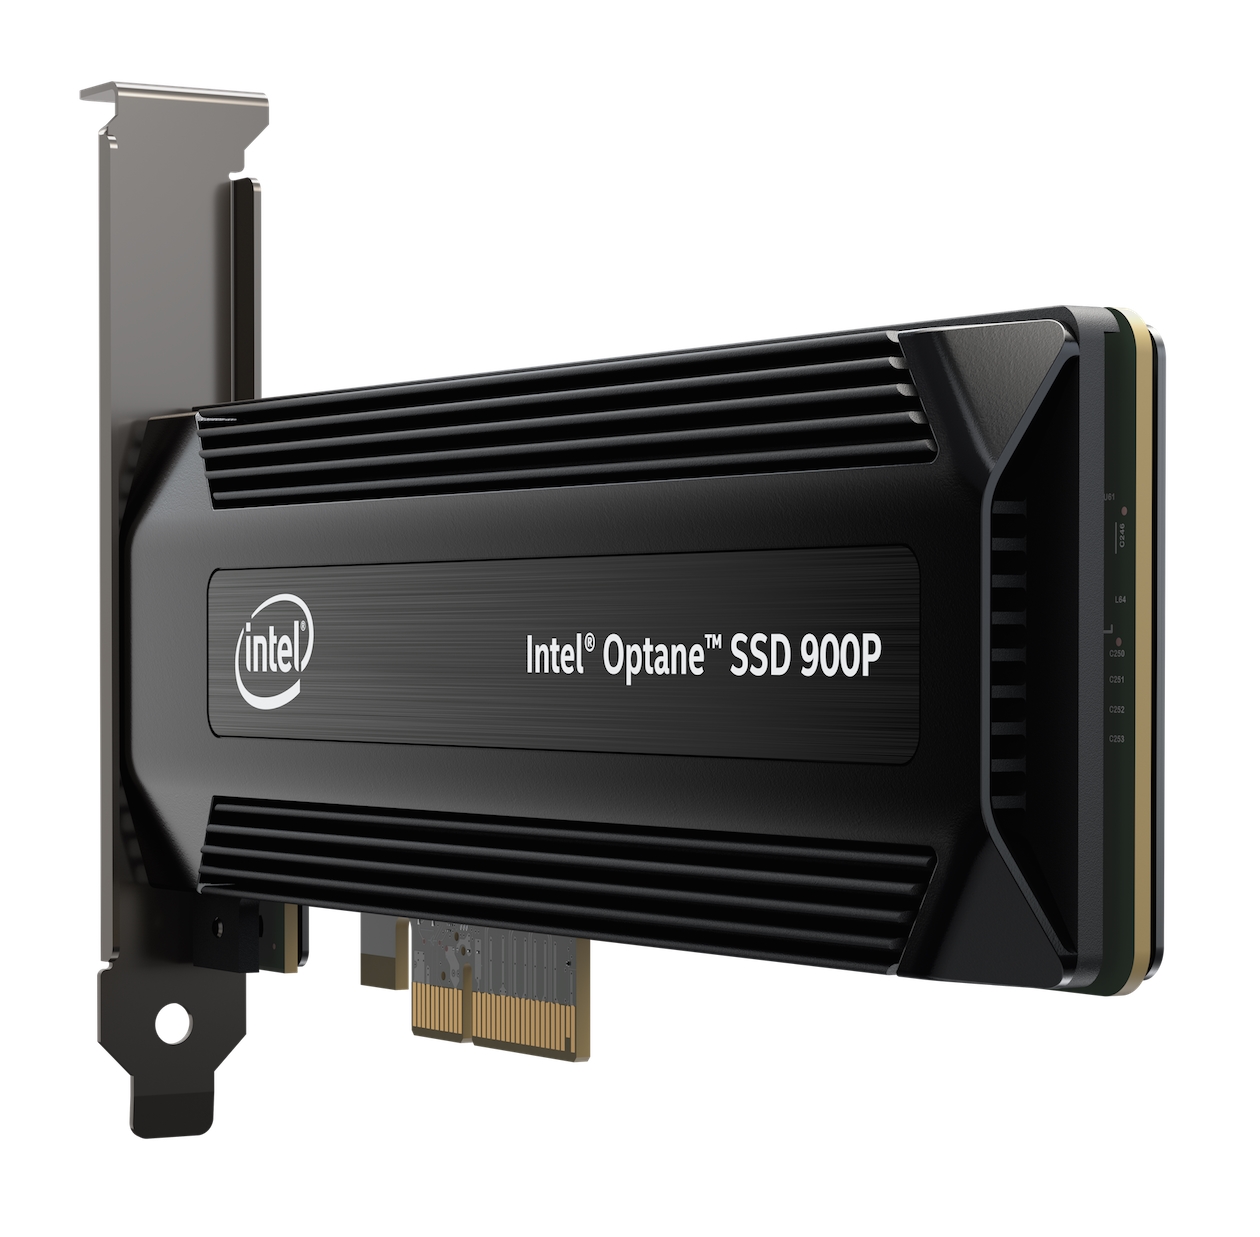 Immagine pubblicata in relazione al seguente contenuto: Intel lancia i primi drive Optane SSD 900P per gaming PC e workstation | Nome immagine: news27278_Intel-Optane-SSD-900P_2.jpg